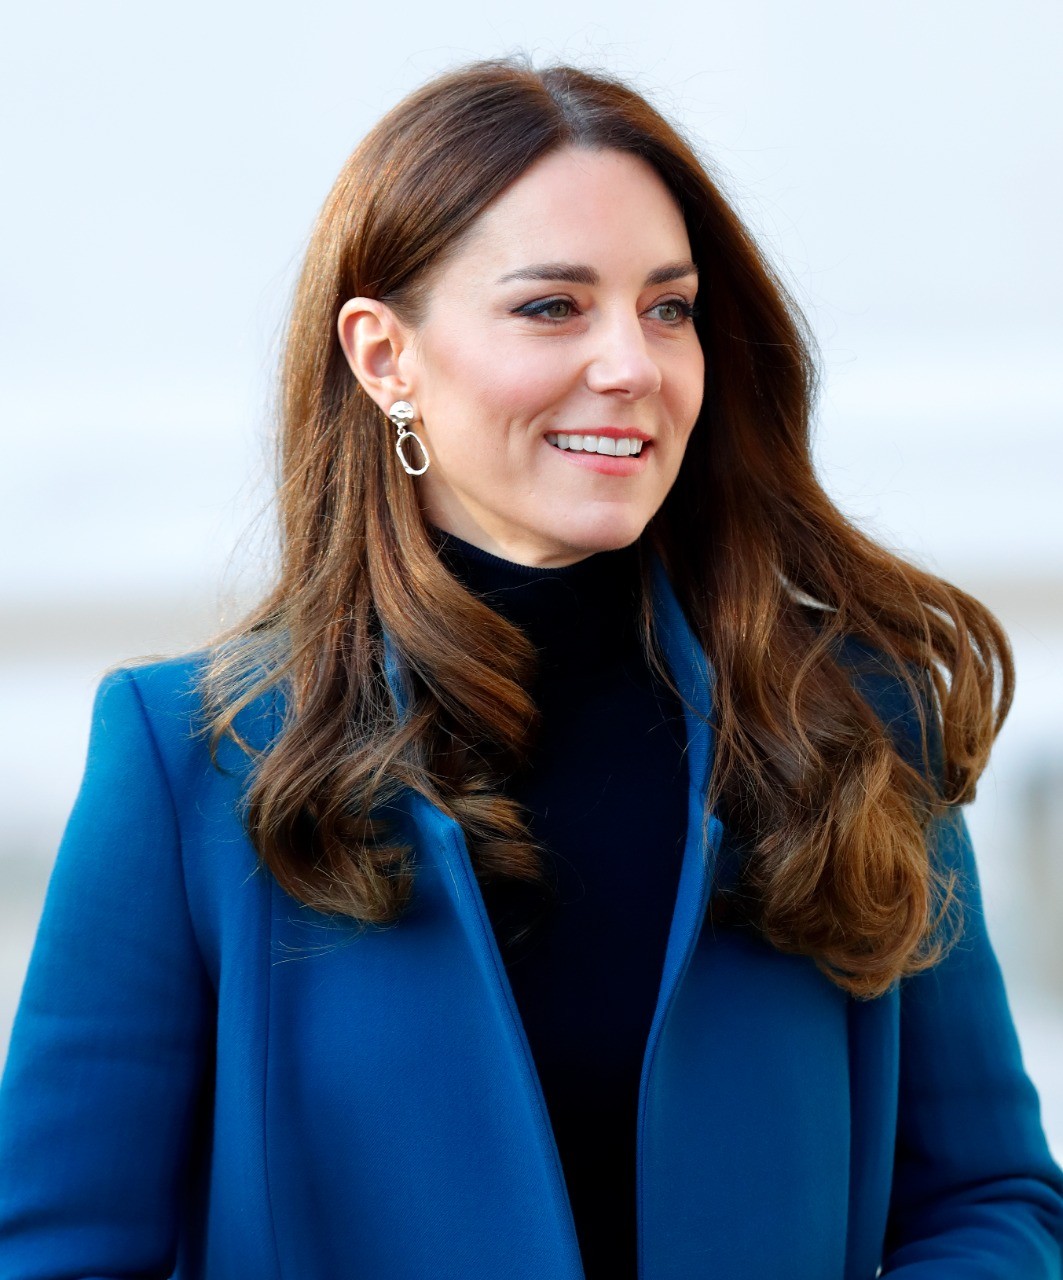 Kate Middleton apareceu com os cabelos mais escuros no inverno (Foto: Getty Images)